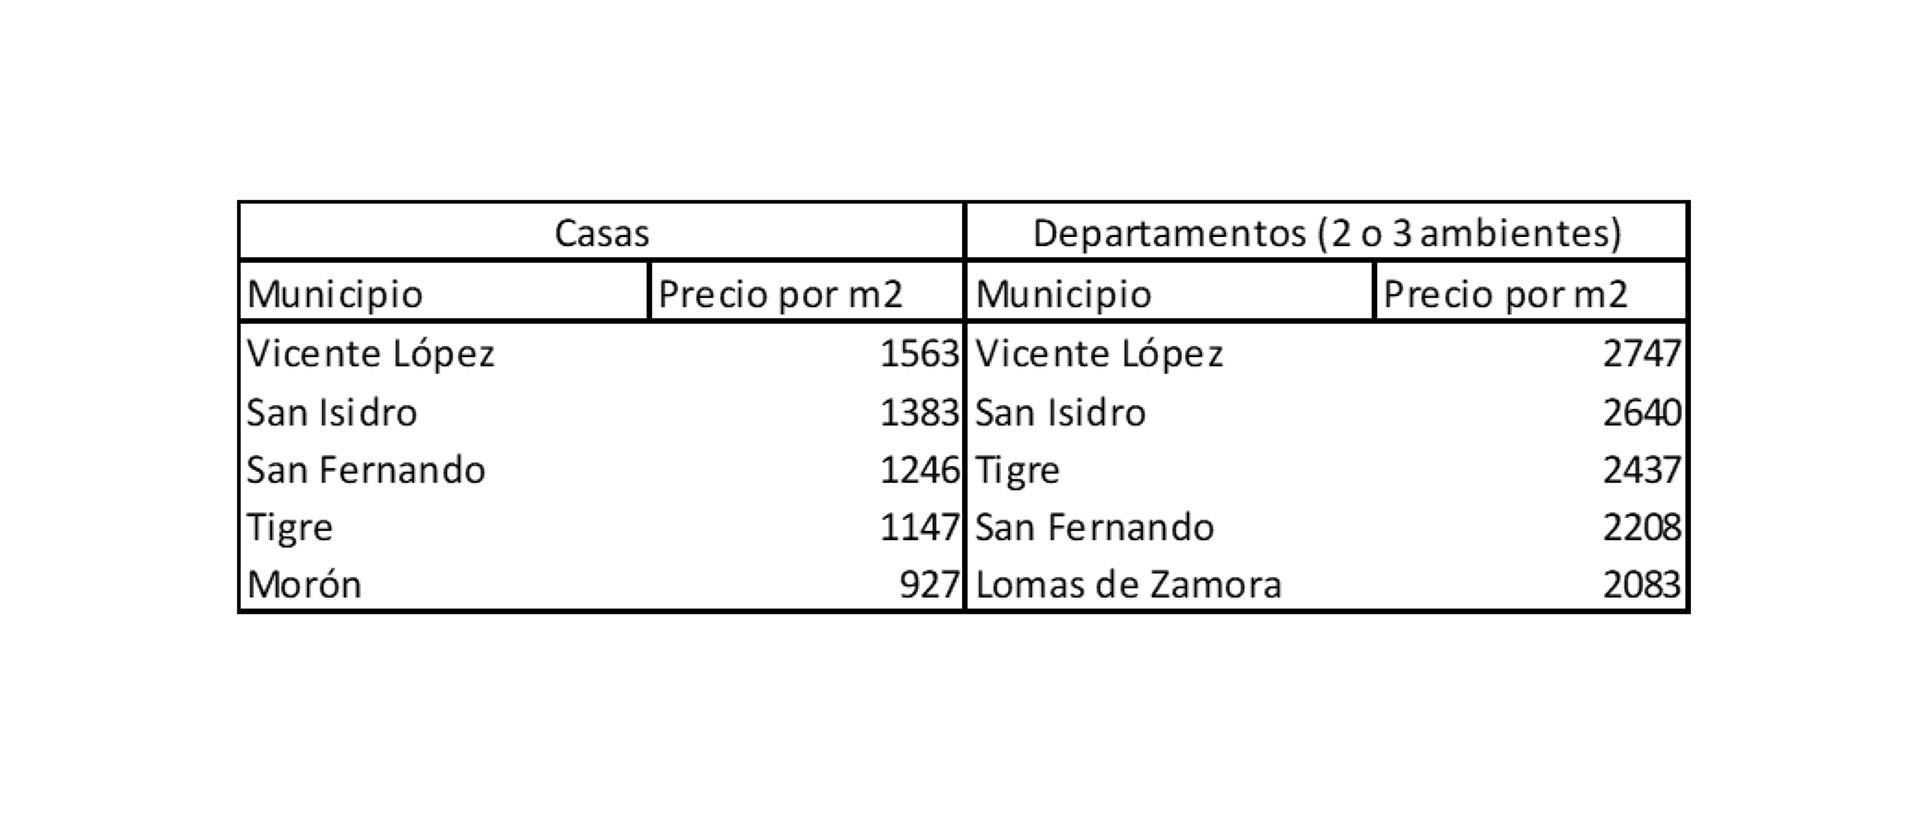 Fuente: Universidad de San Andrés (UDESA) y Mercado Libre. Aquí los precios por m2 en casas y departamentos que lideran el ranking en los municipios del AMBA